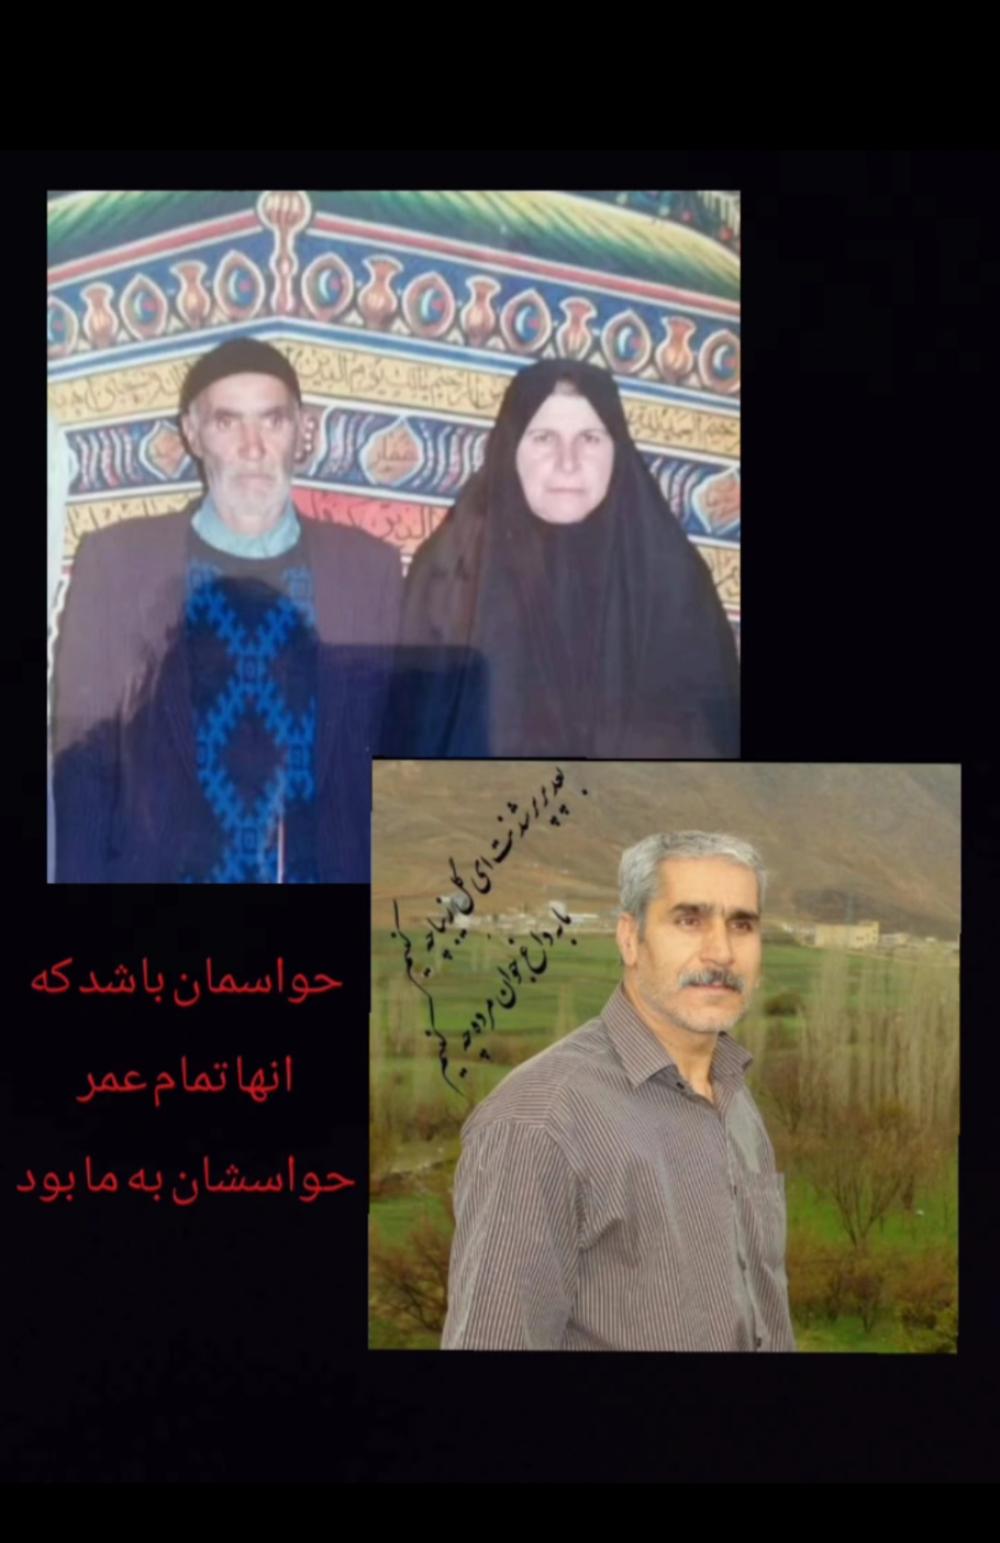 یادبود شادروانان فضل الله جوادی و خانم نرگس یاسینی و علی جوادی جوادی